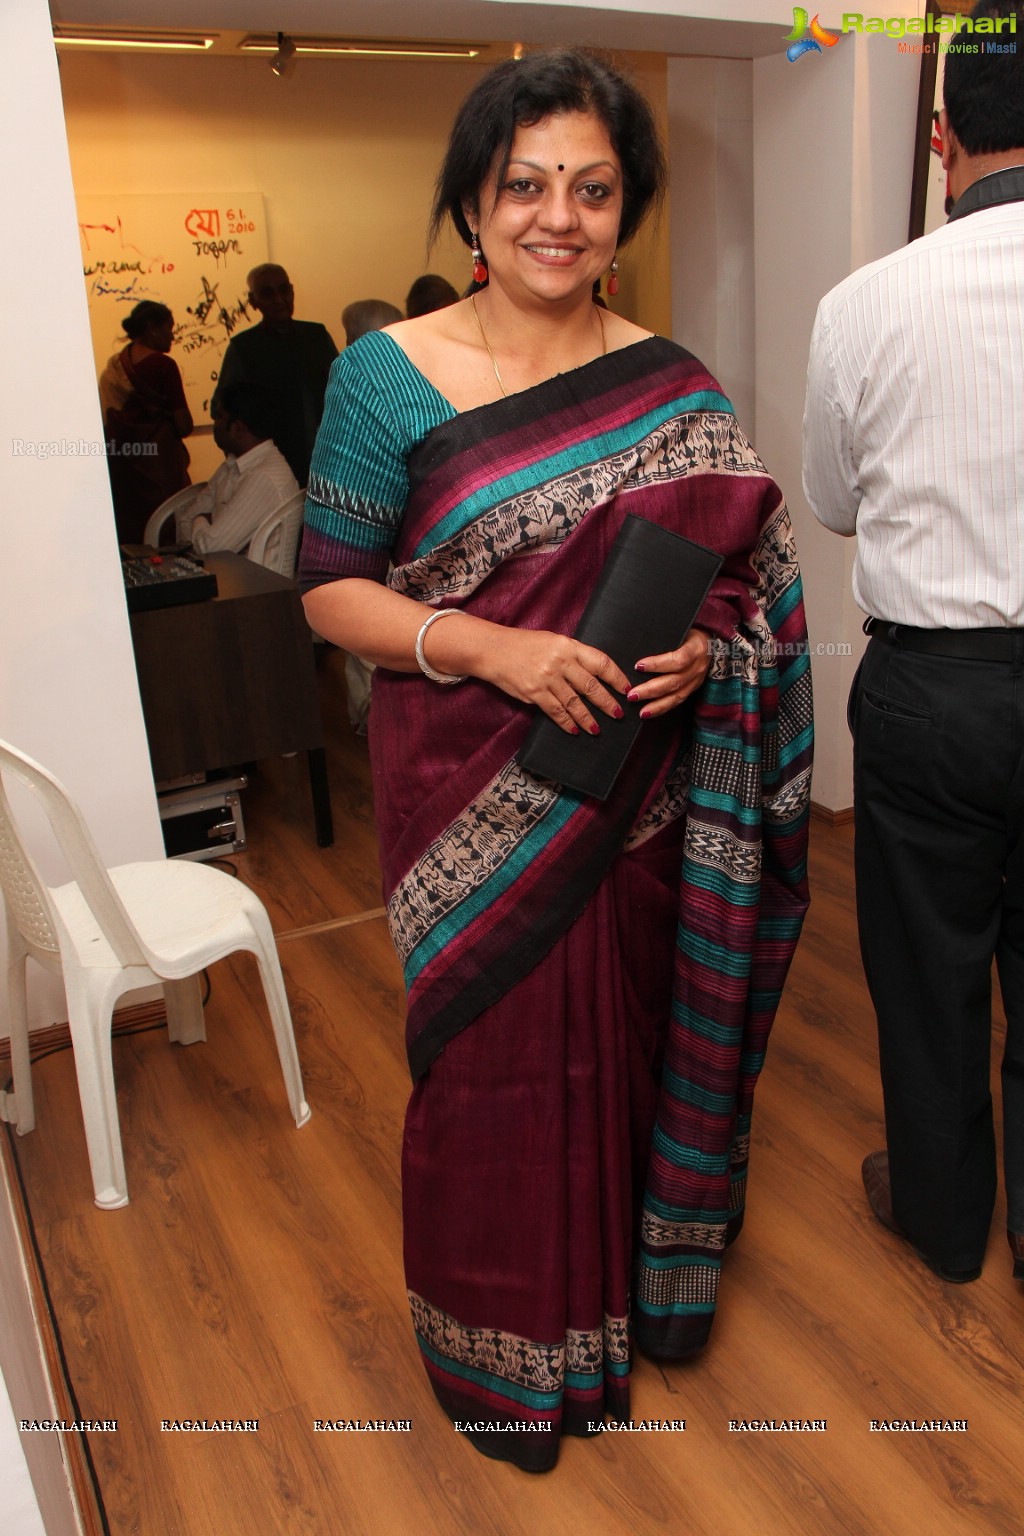 Krishnakriti Annual Festival of Art & Culture 2014 at Kalakriti Art Gallery, Hyderabad